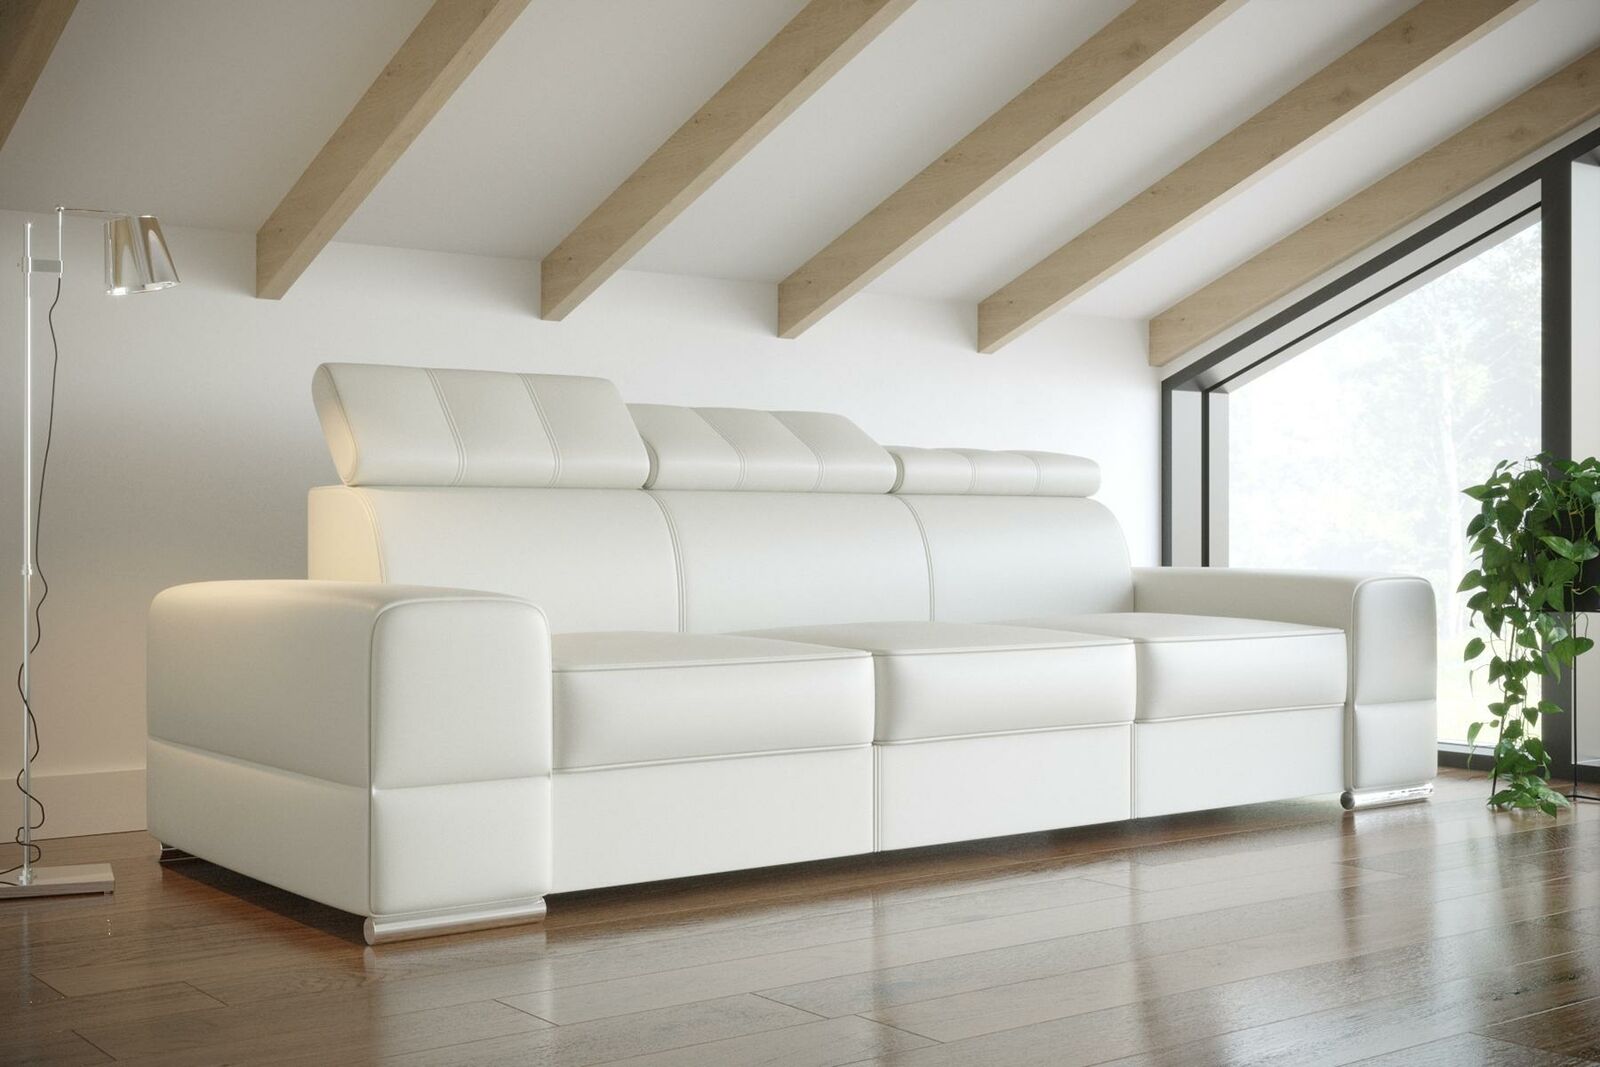 Design xxl Couchen Sofa 4 – Sitzer Couch Leder Polster Weiß Luxus Sofa Viersitz